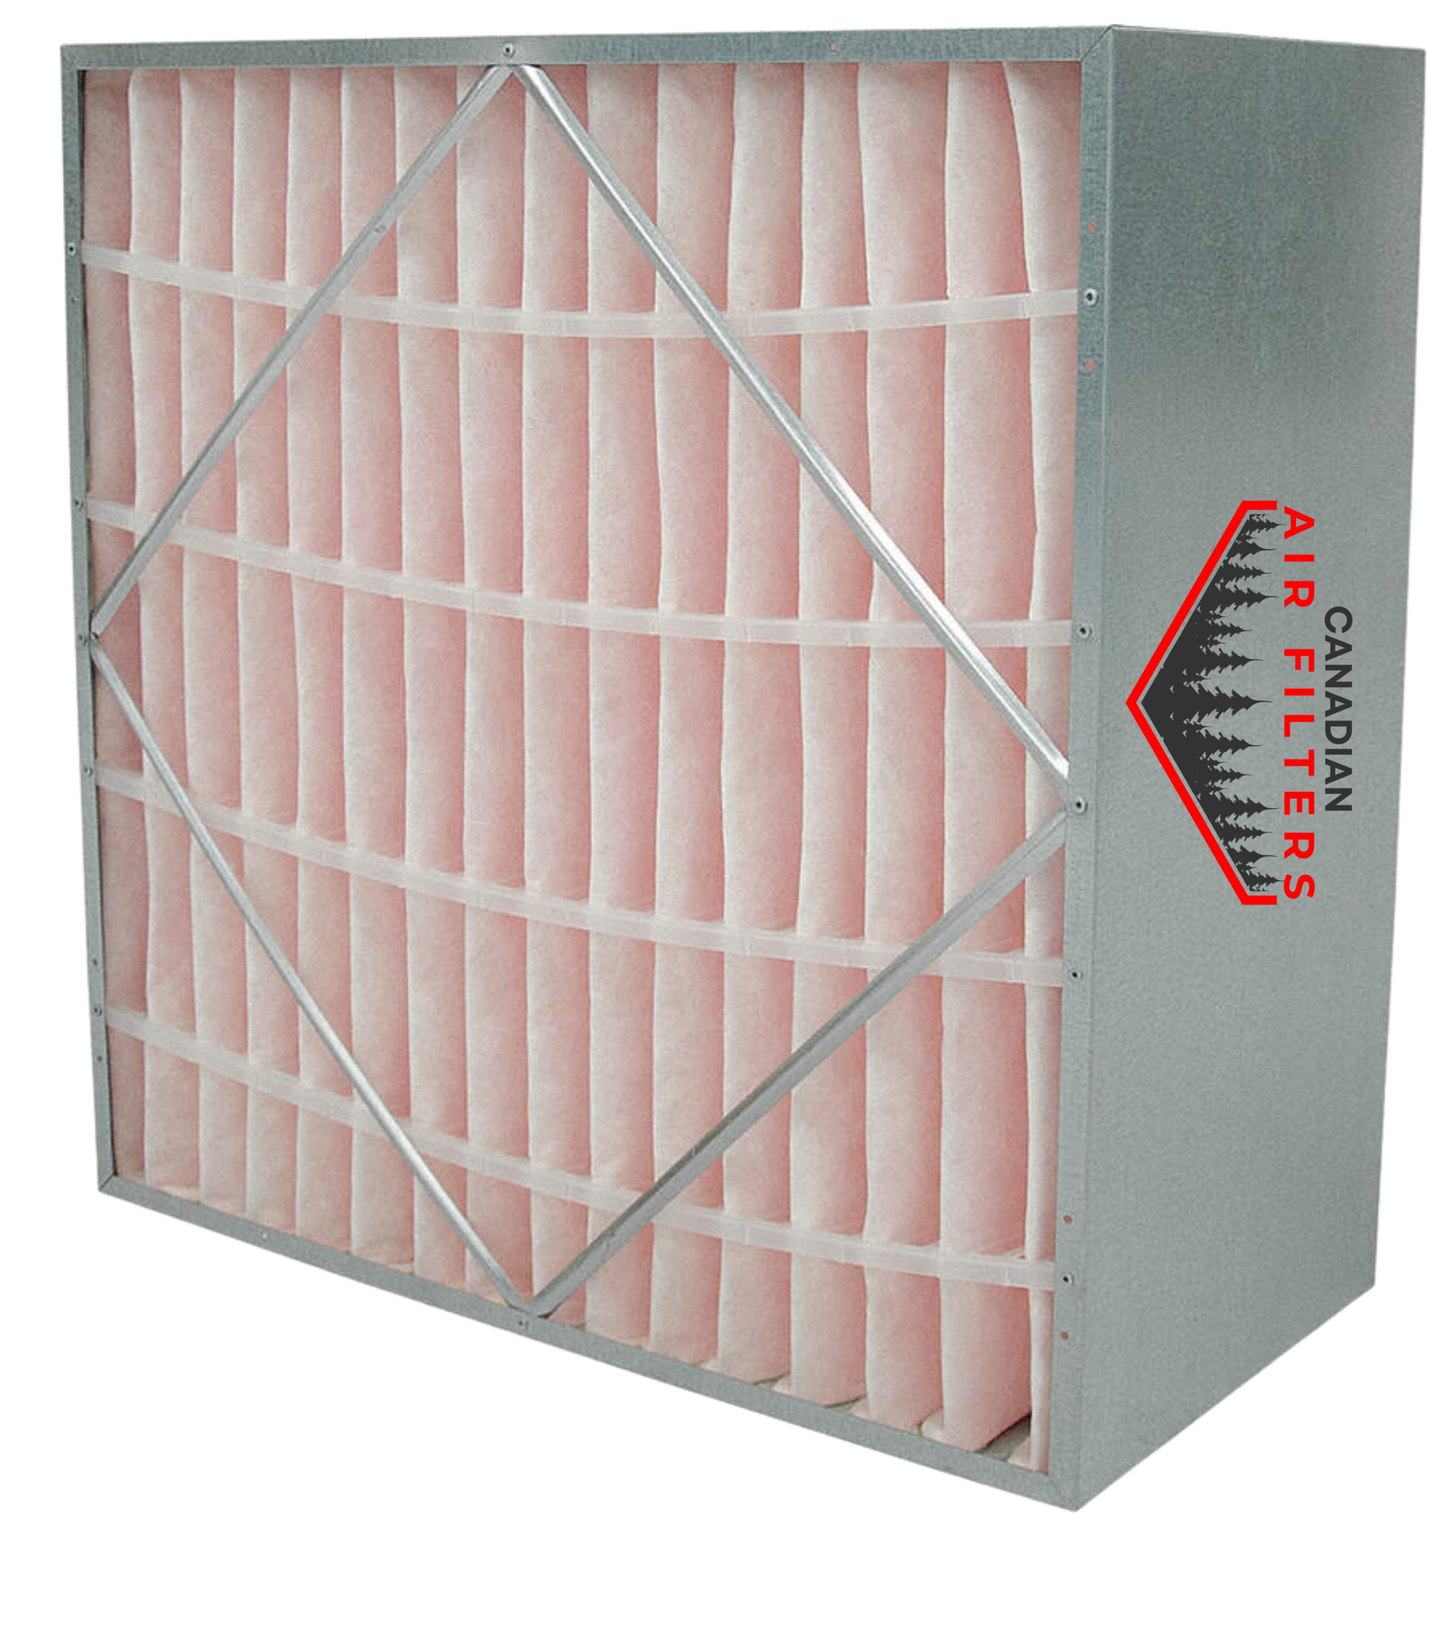 12 x 24 x 12 - Rigid Cell Air Filters Box Style - Merv 14 (Each)